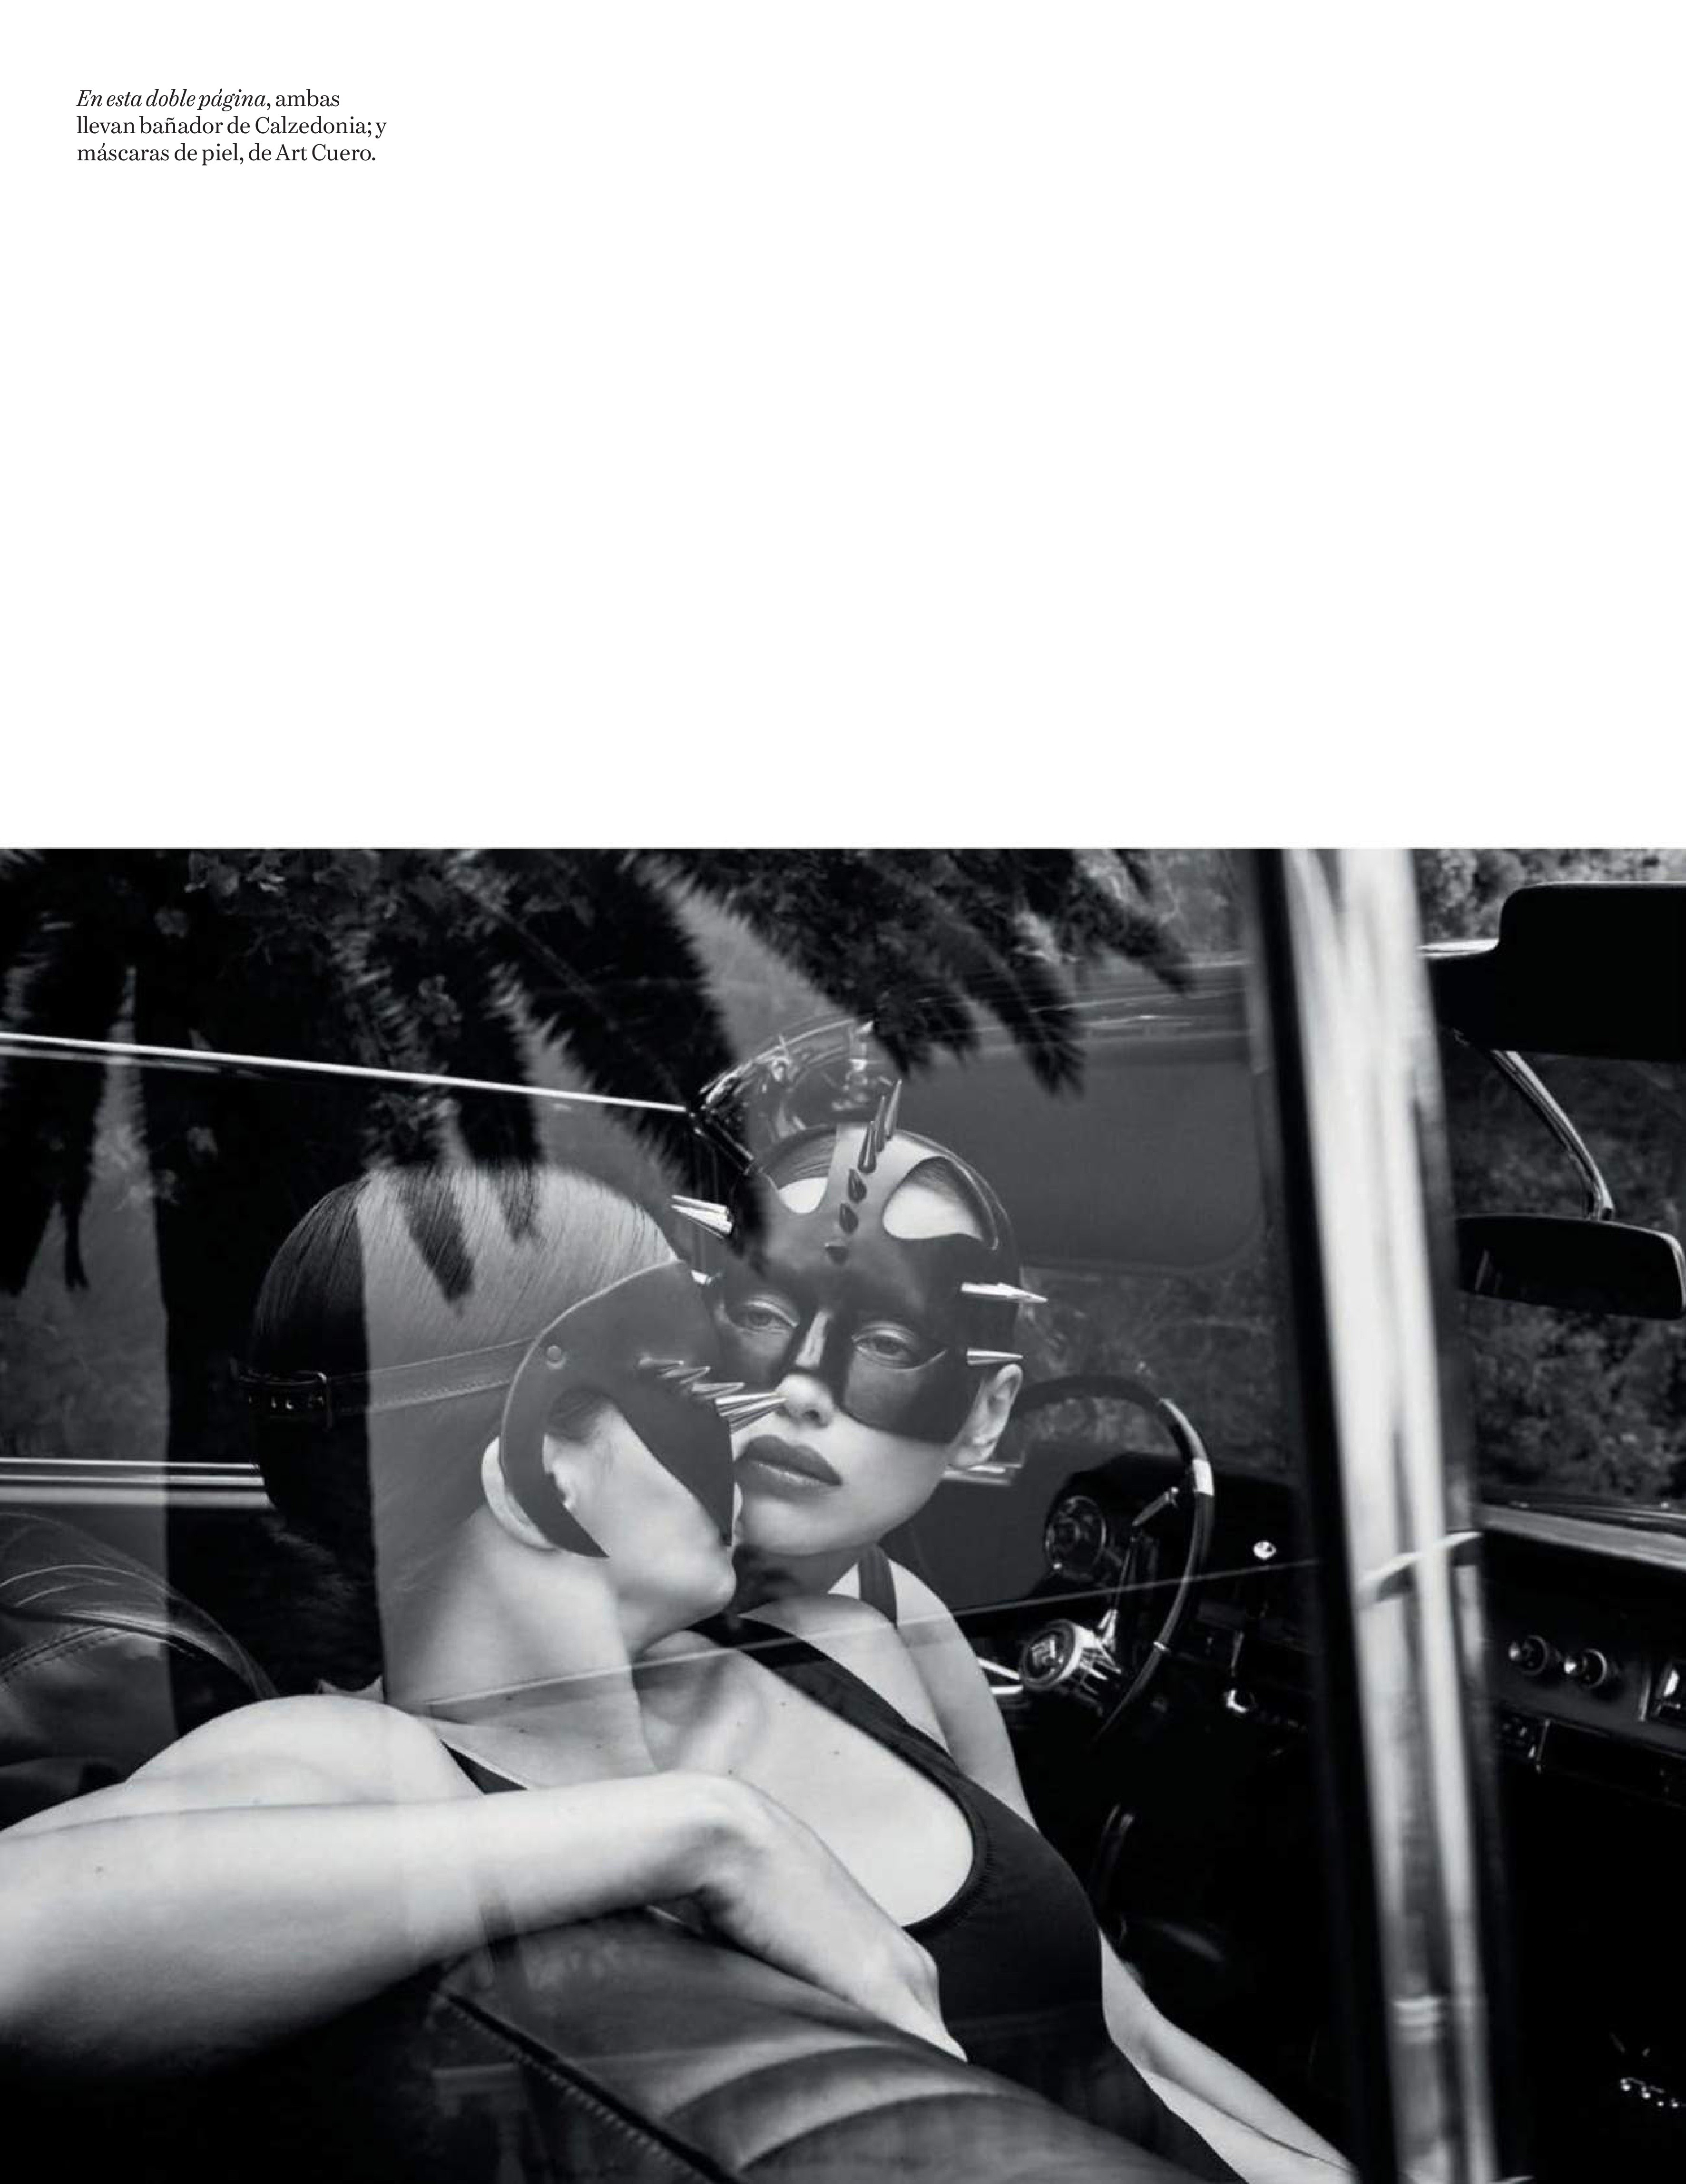 Adriana Lima Irina Shayk TheFappening.Pro 2 - Adriana Lima & Irina Shayk for Vogue Spain (22 Photos)